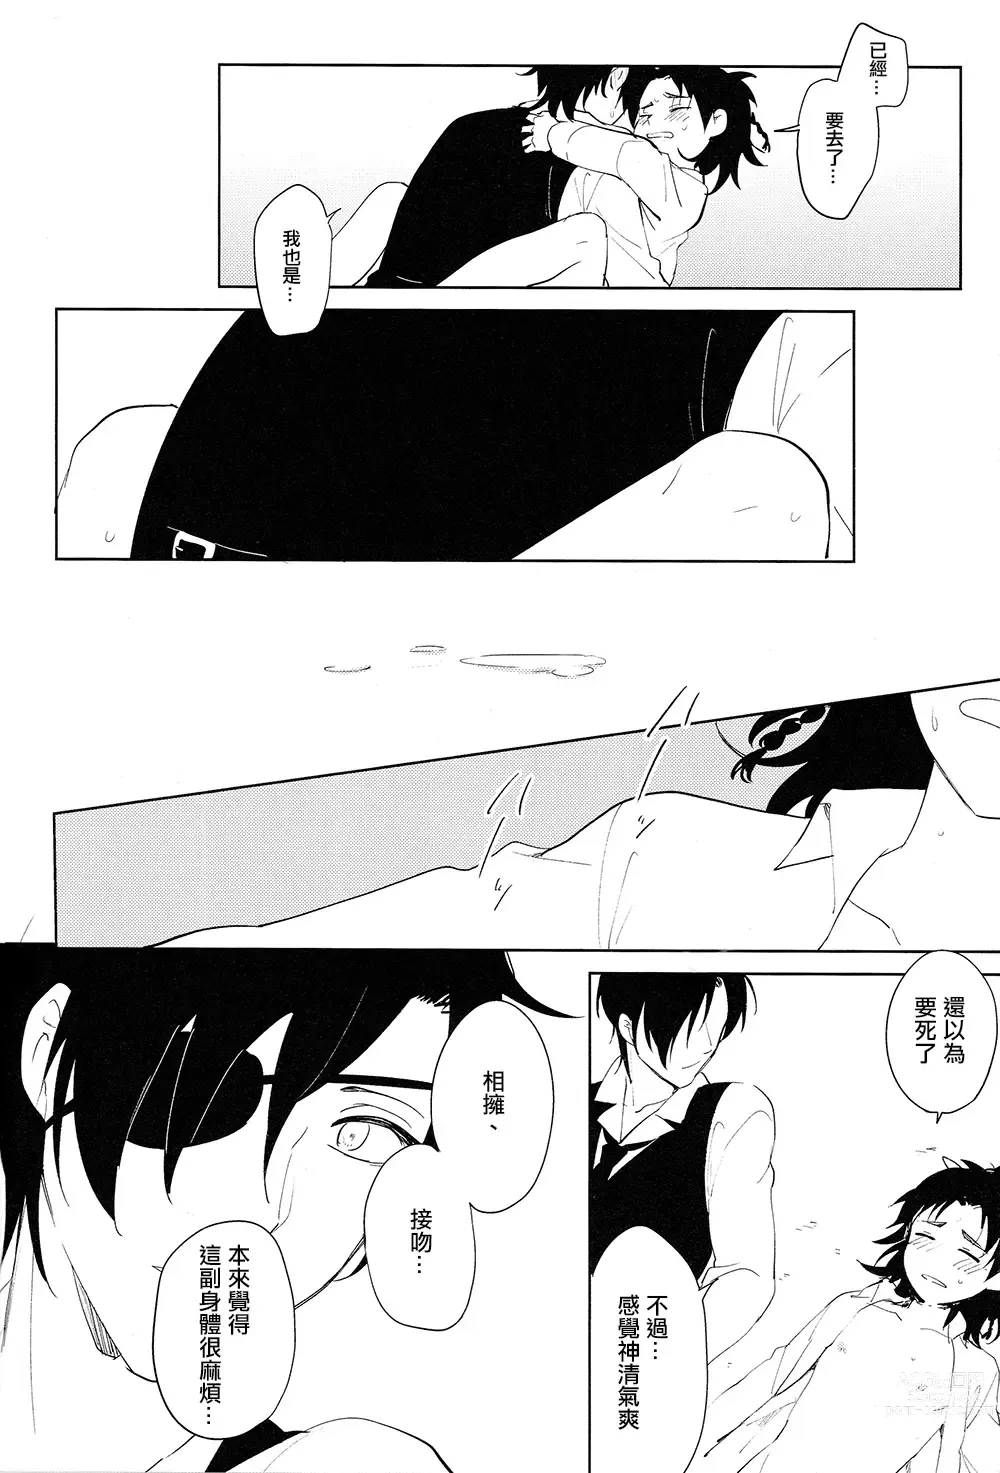 Page 23 of doujinshi 从一个人变成两个人